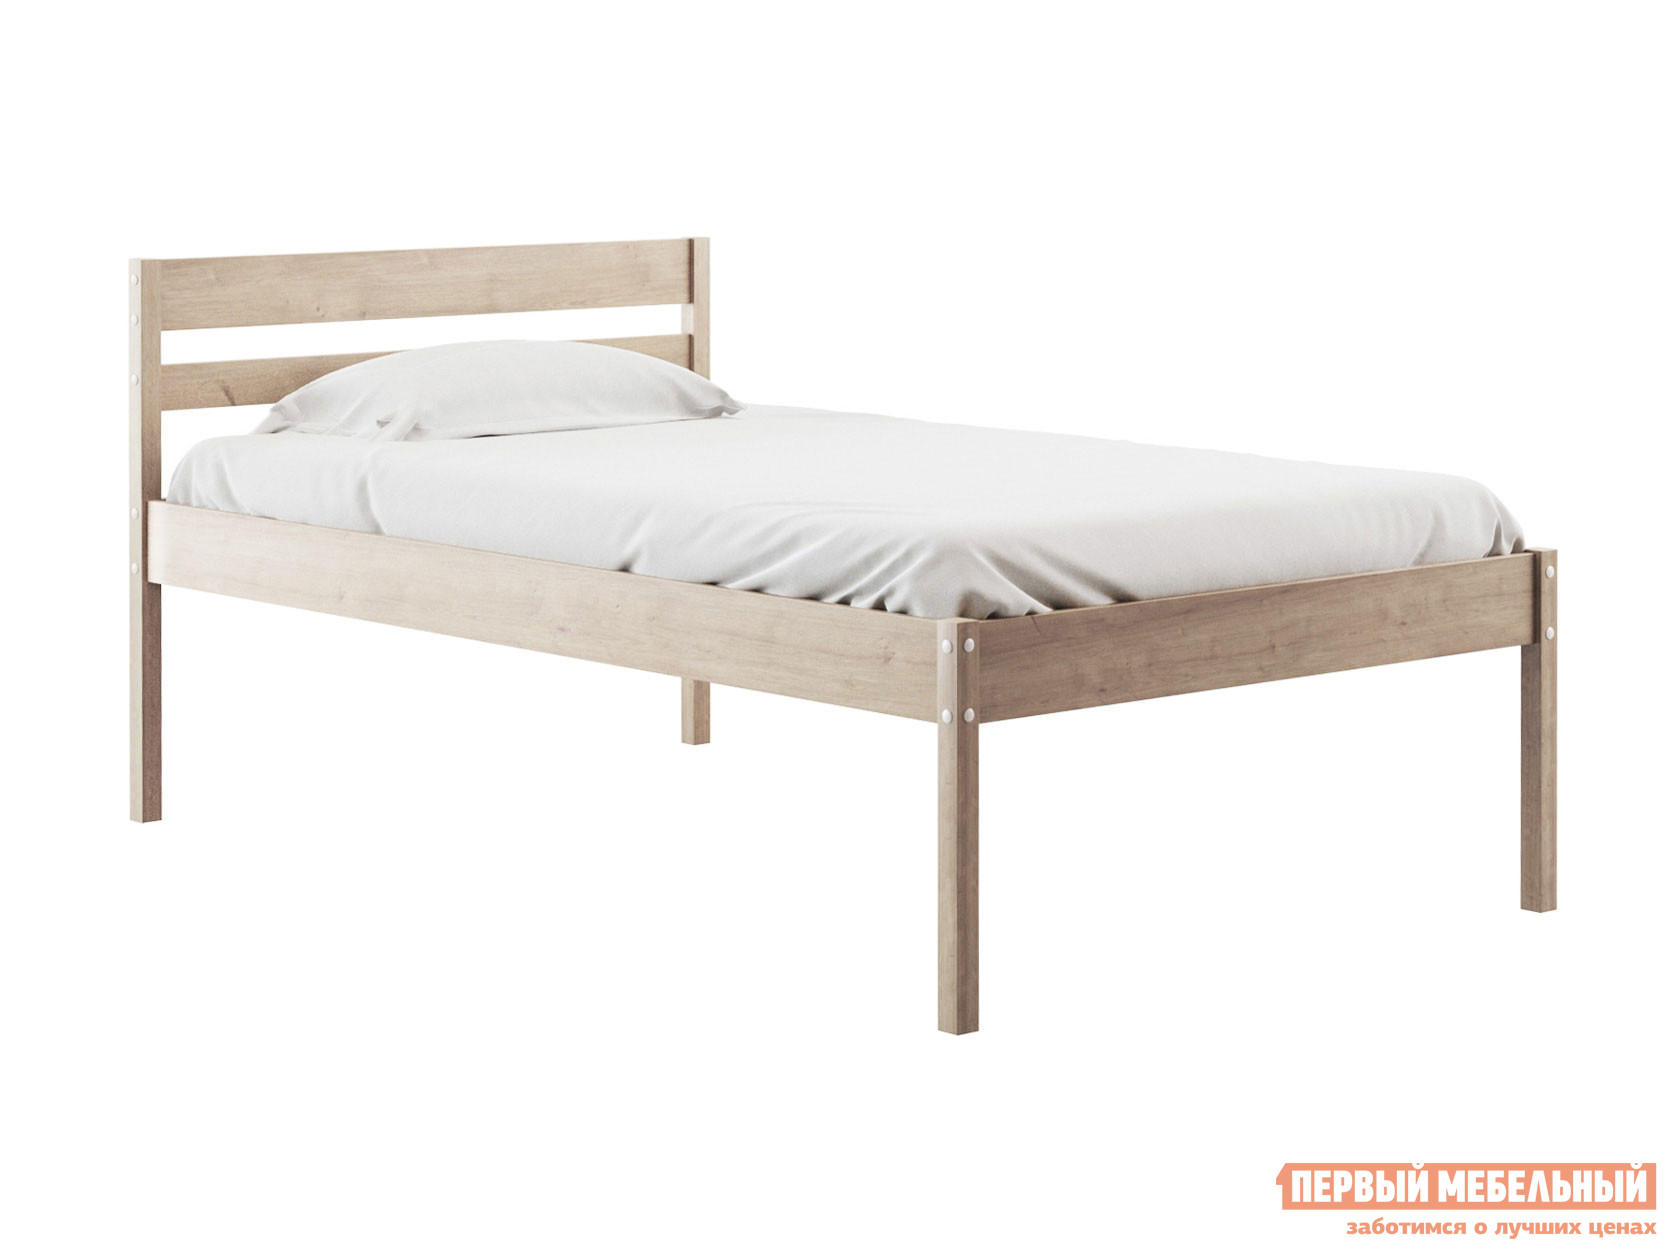 Двуспальная кровать  Эко Натуральный, 120х200 см, 41 см